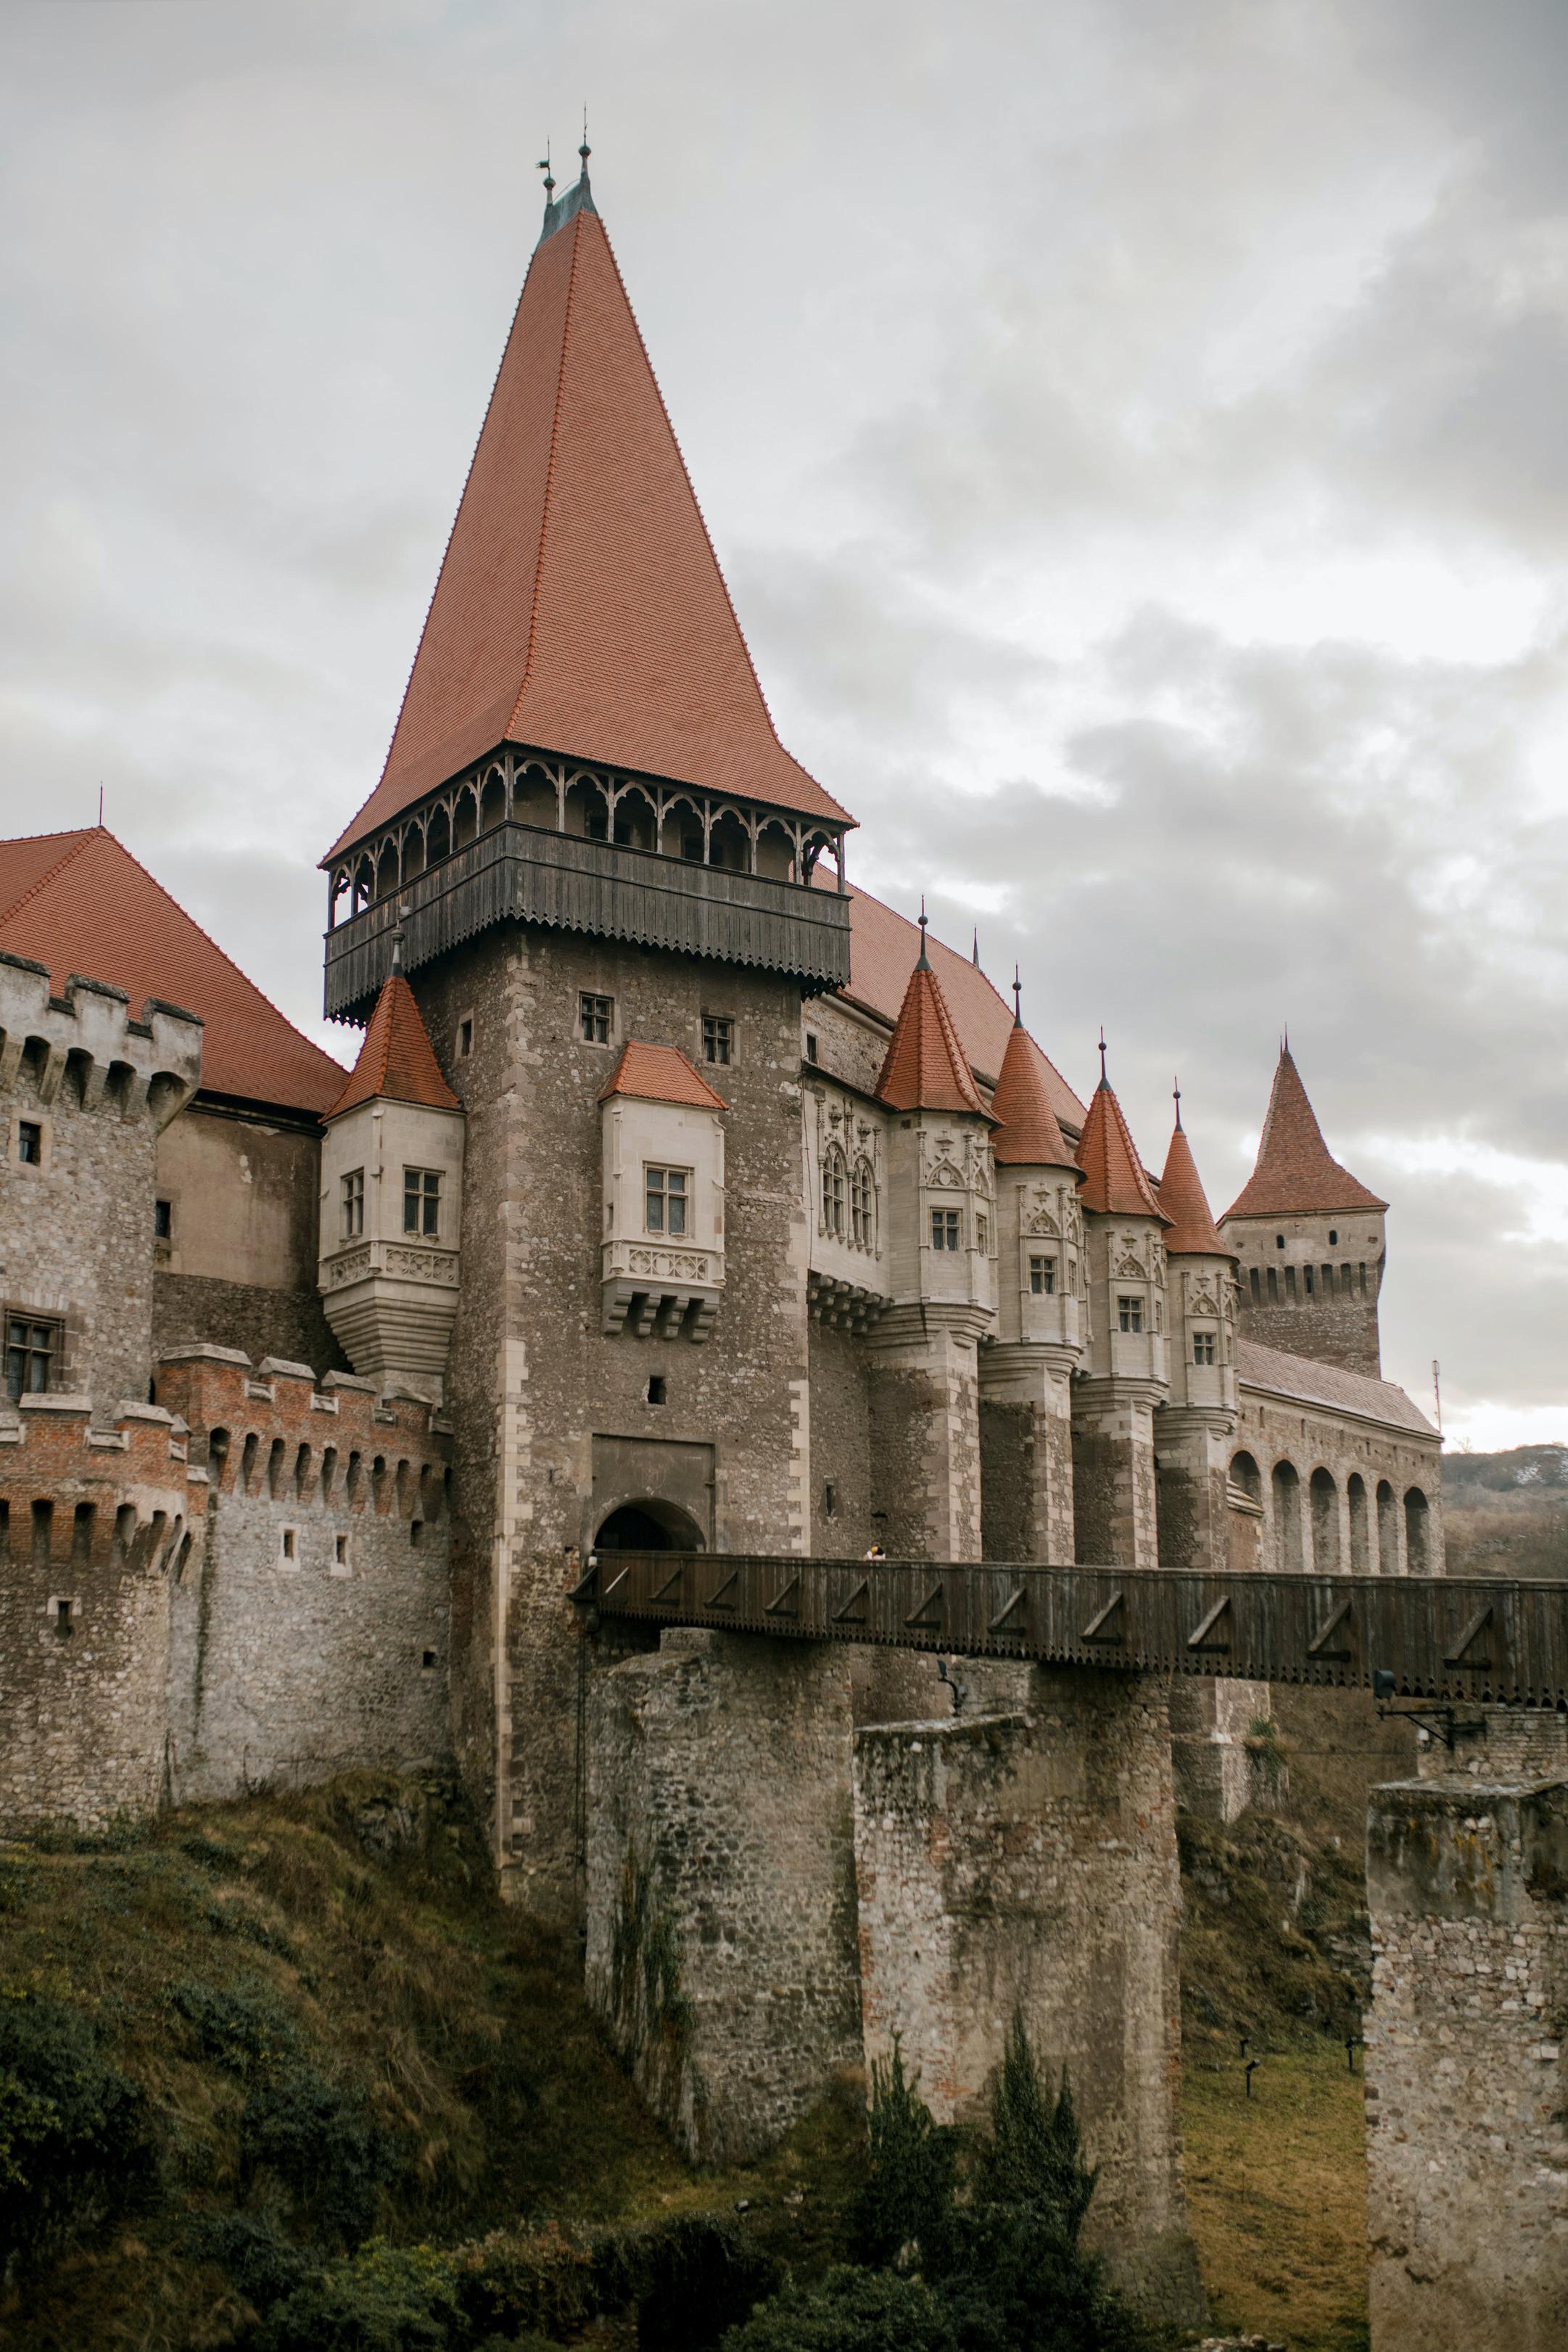 Historia zamek książąt śląskich serce historycznej legnicy